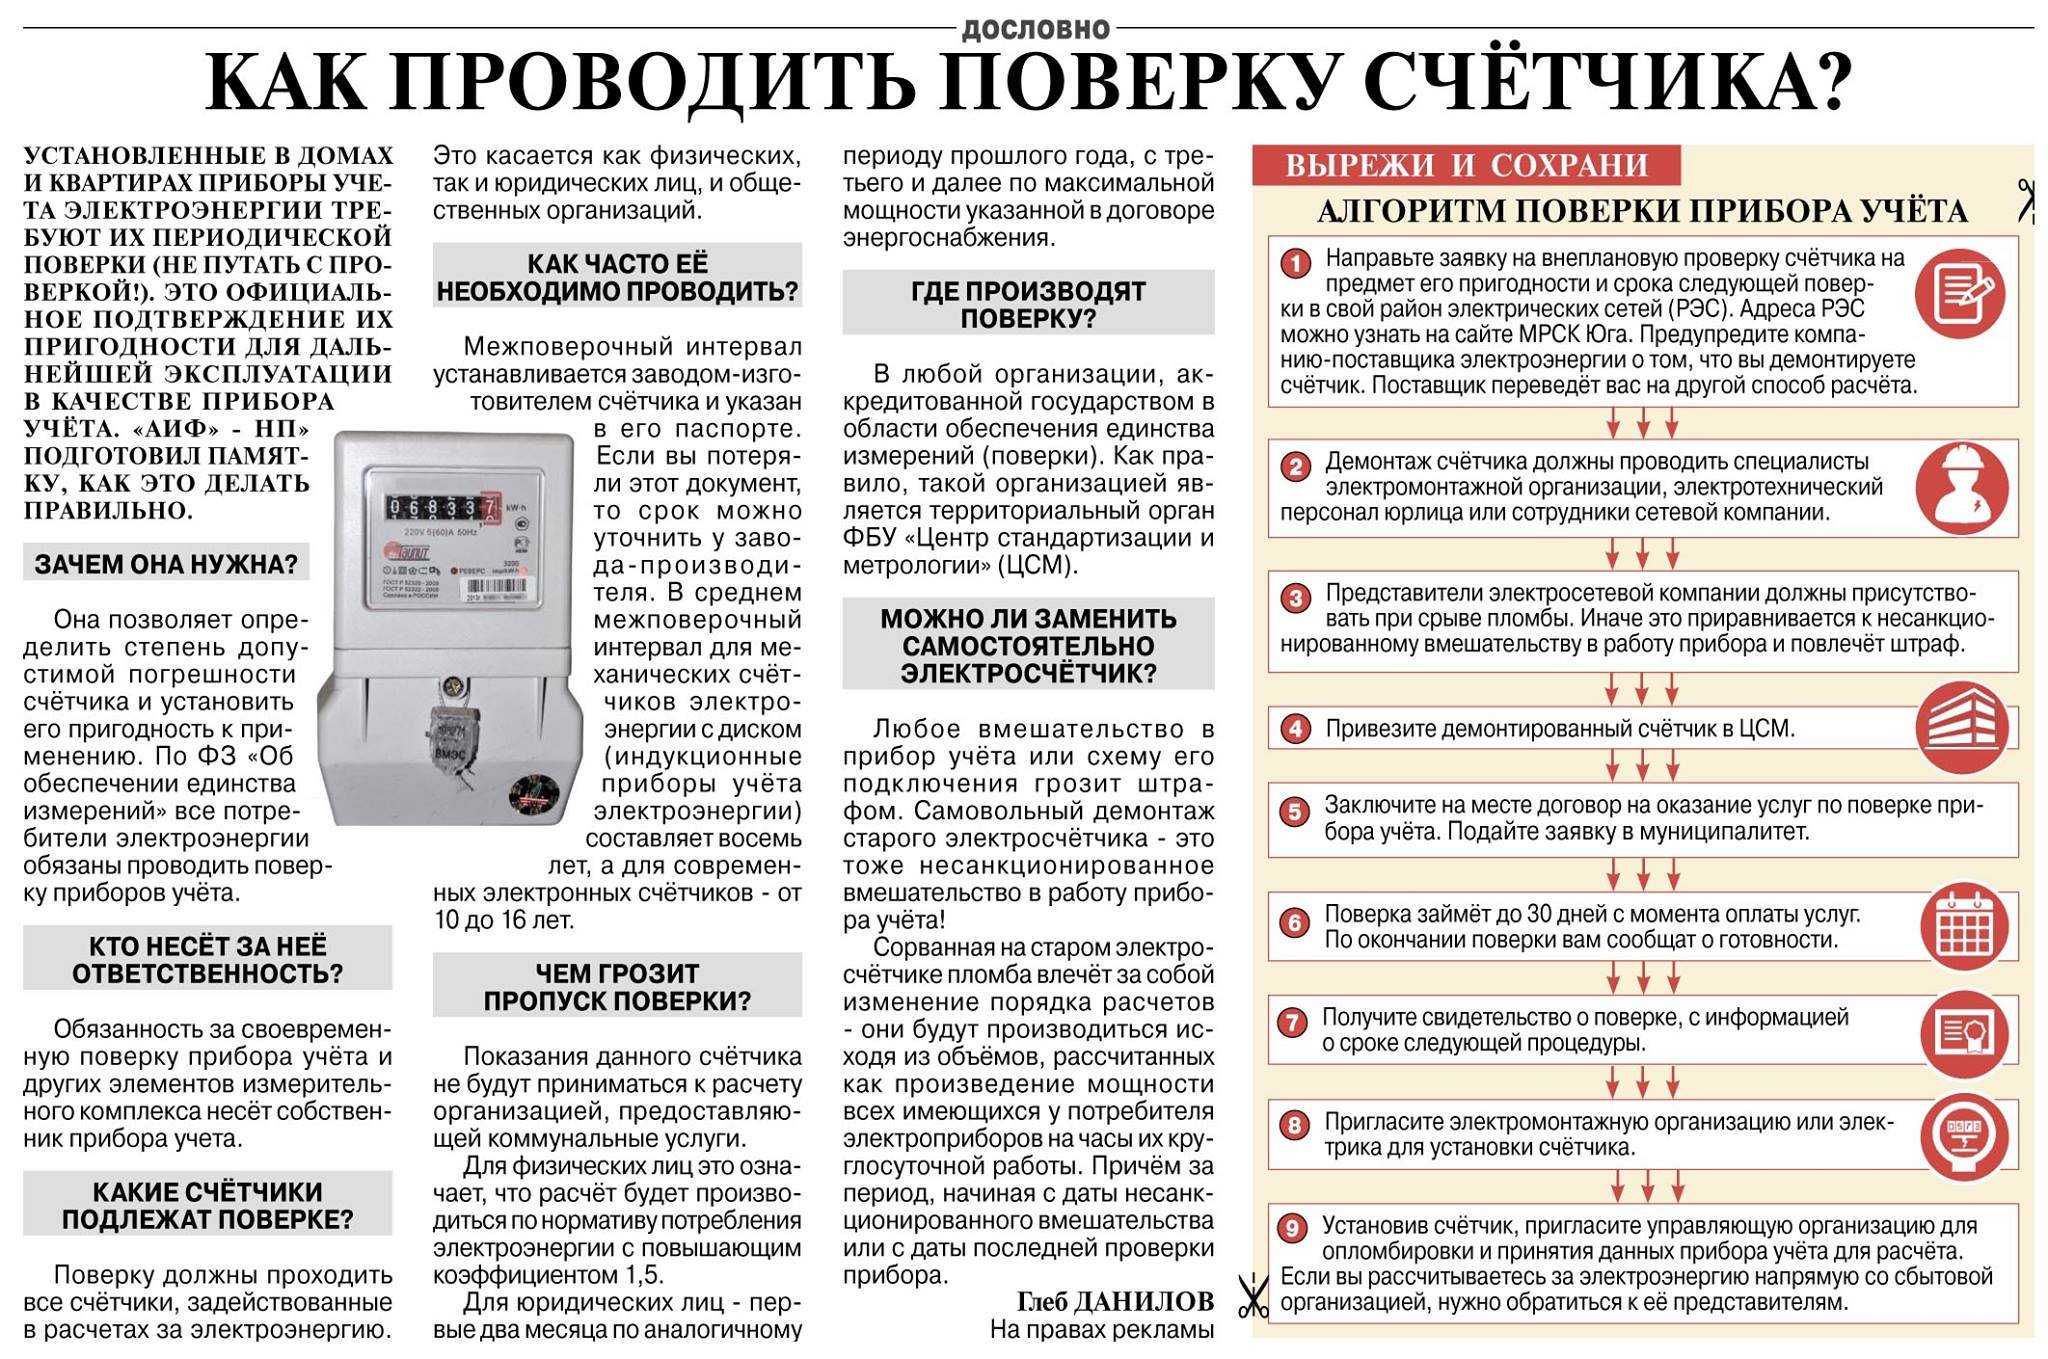 Как опломбировать счетчик на воду - пошаговая инструкция, особенности и требования :: businessman.ru